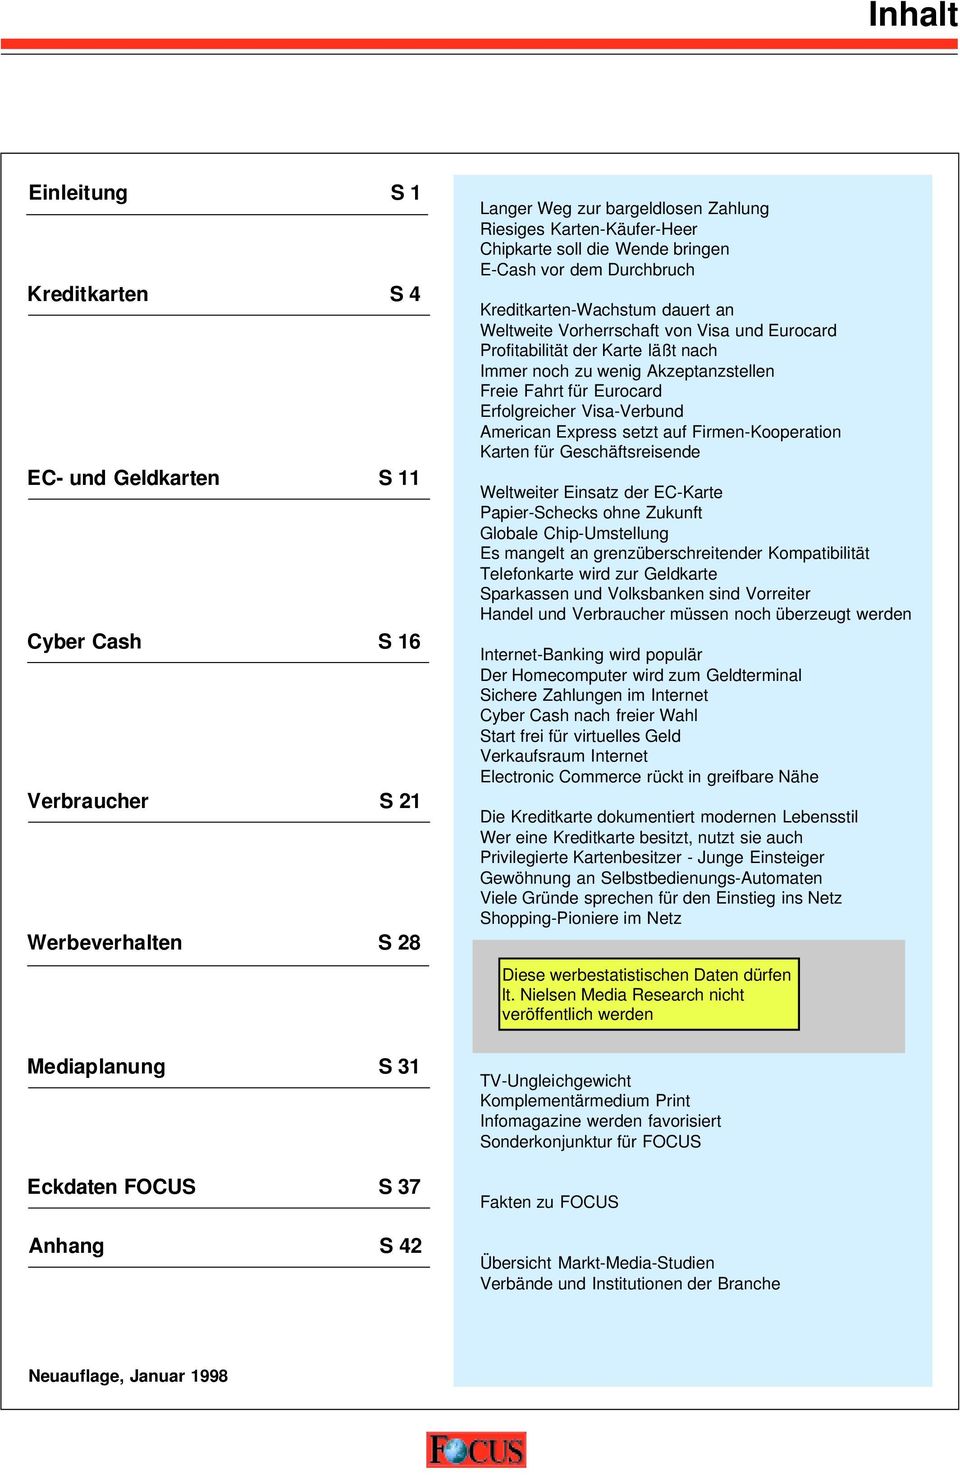 Inhalt. Einleitung S 1. Kreditkarten S 4. EC- und Geldkarten S 11. Cyber  Cash S 16. Verbraucher S 21. Werbeverhalten S PDF Free Download